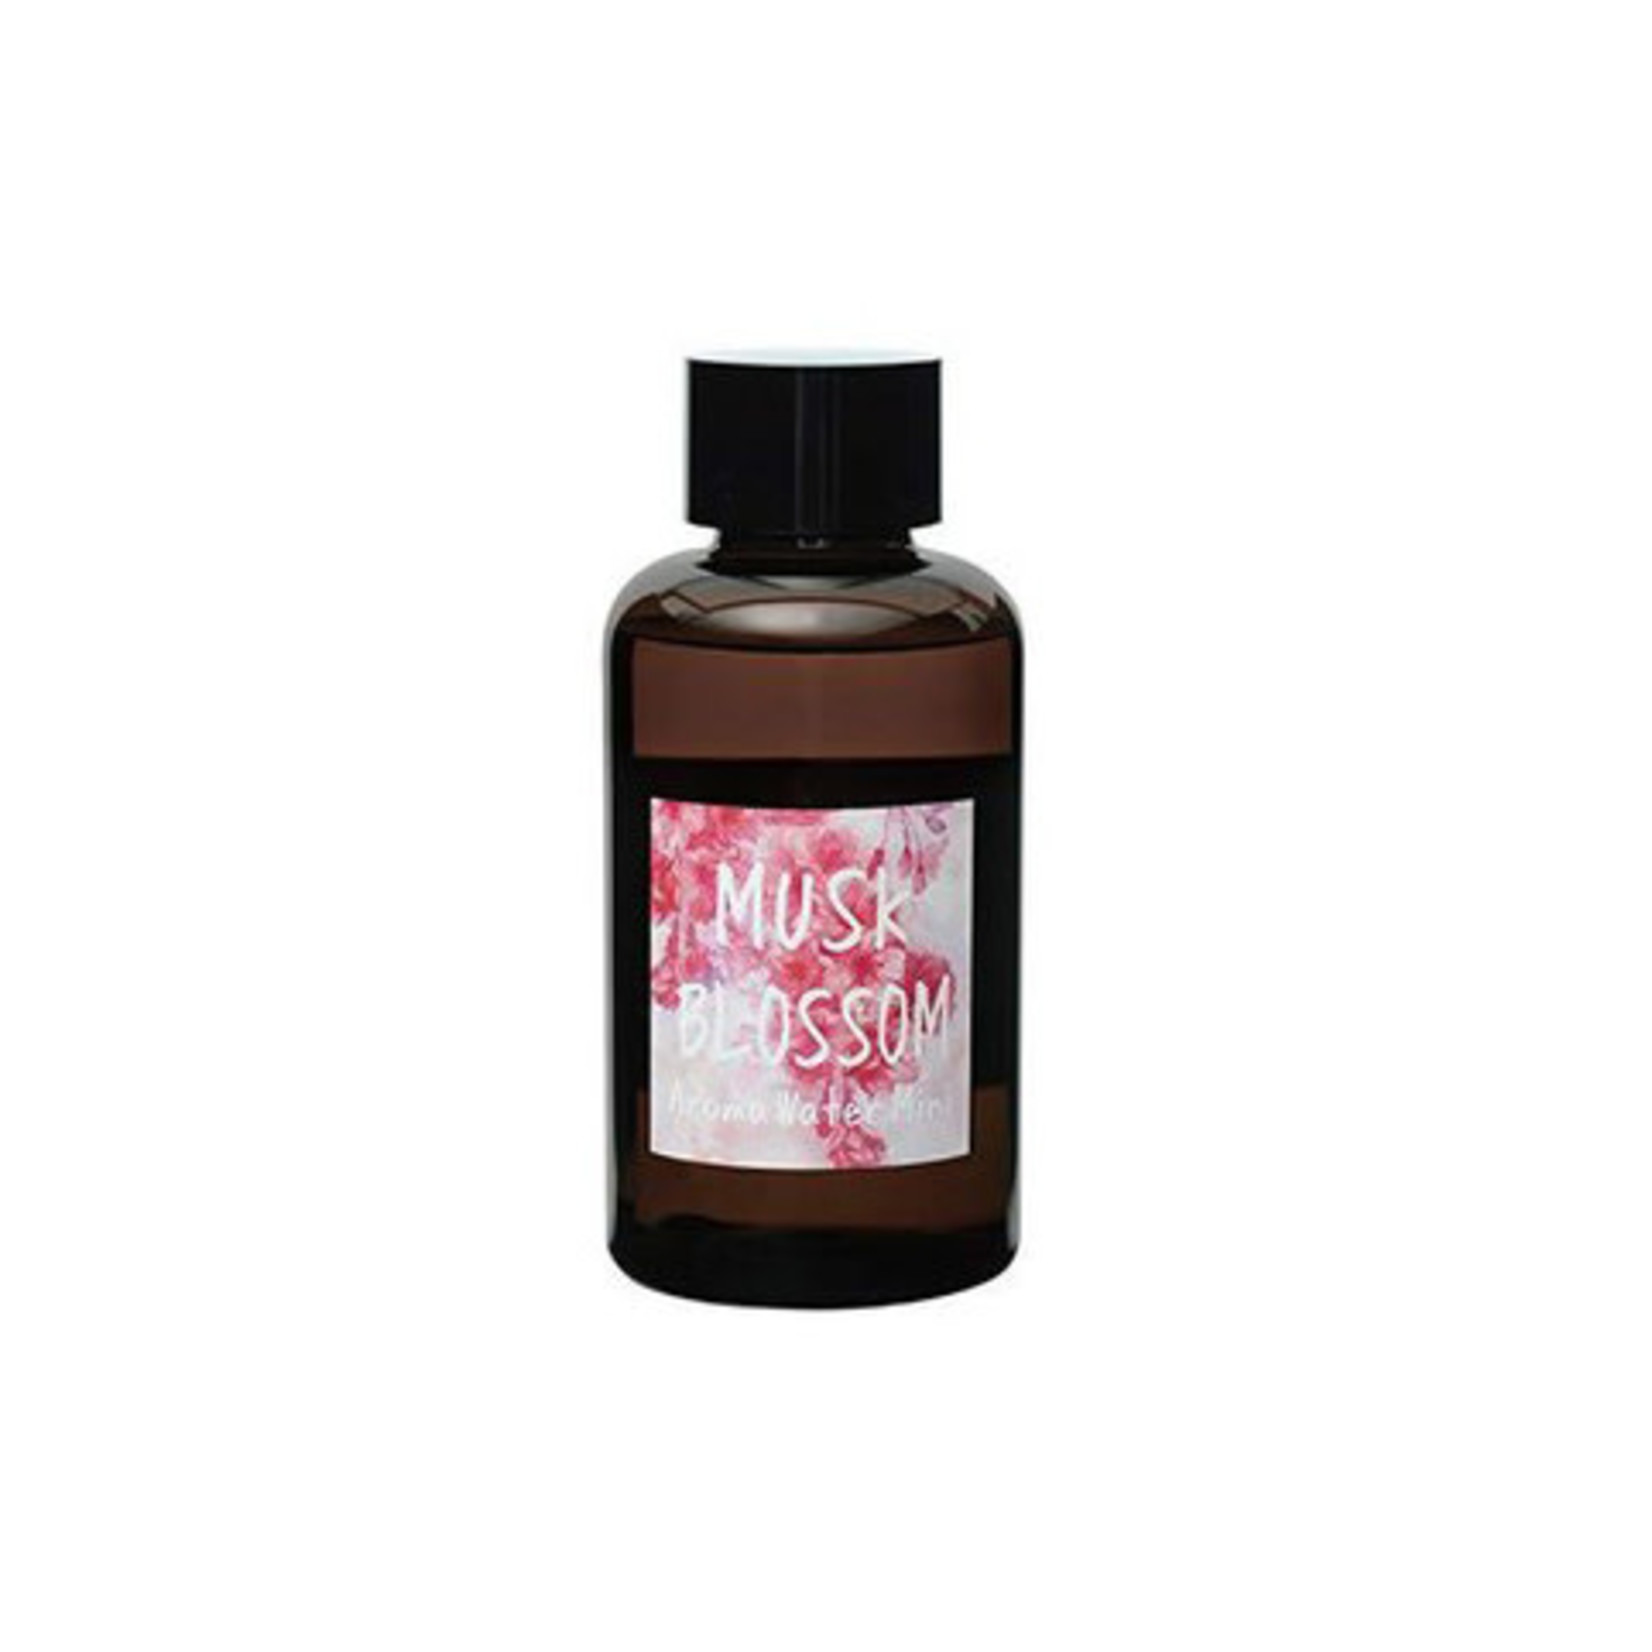 Nol John's Blend John's Blend Aroma Water Mini - Musk Blossom